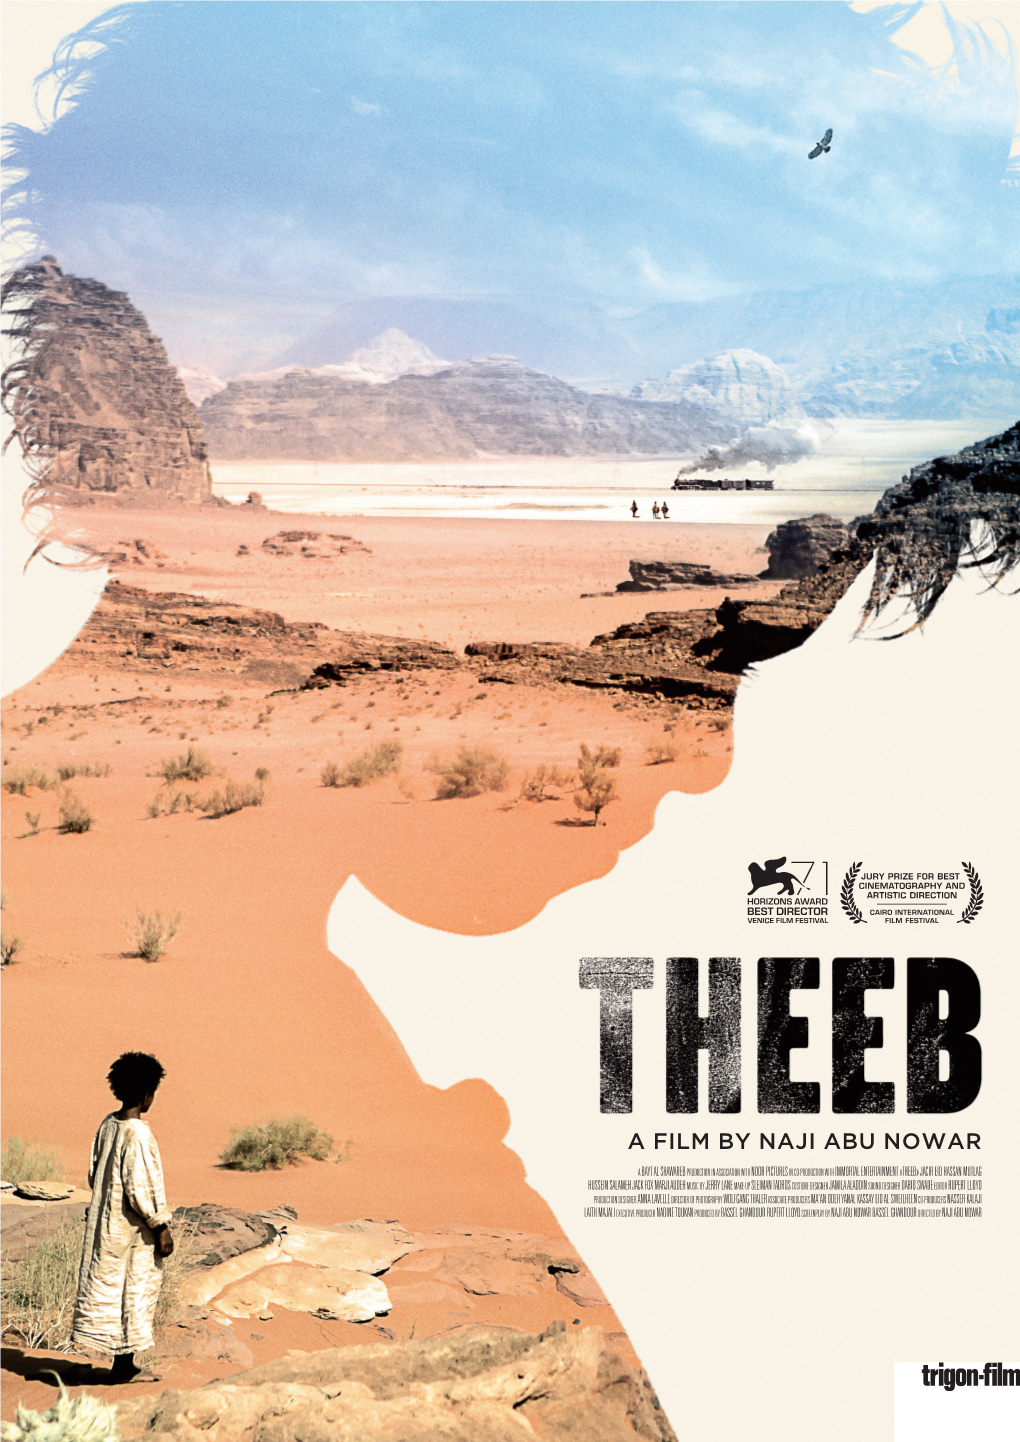 A Film by Naji Abu Nowar